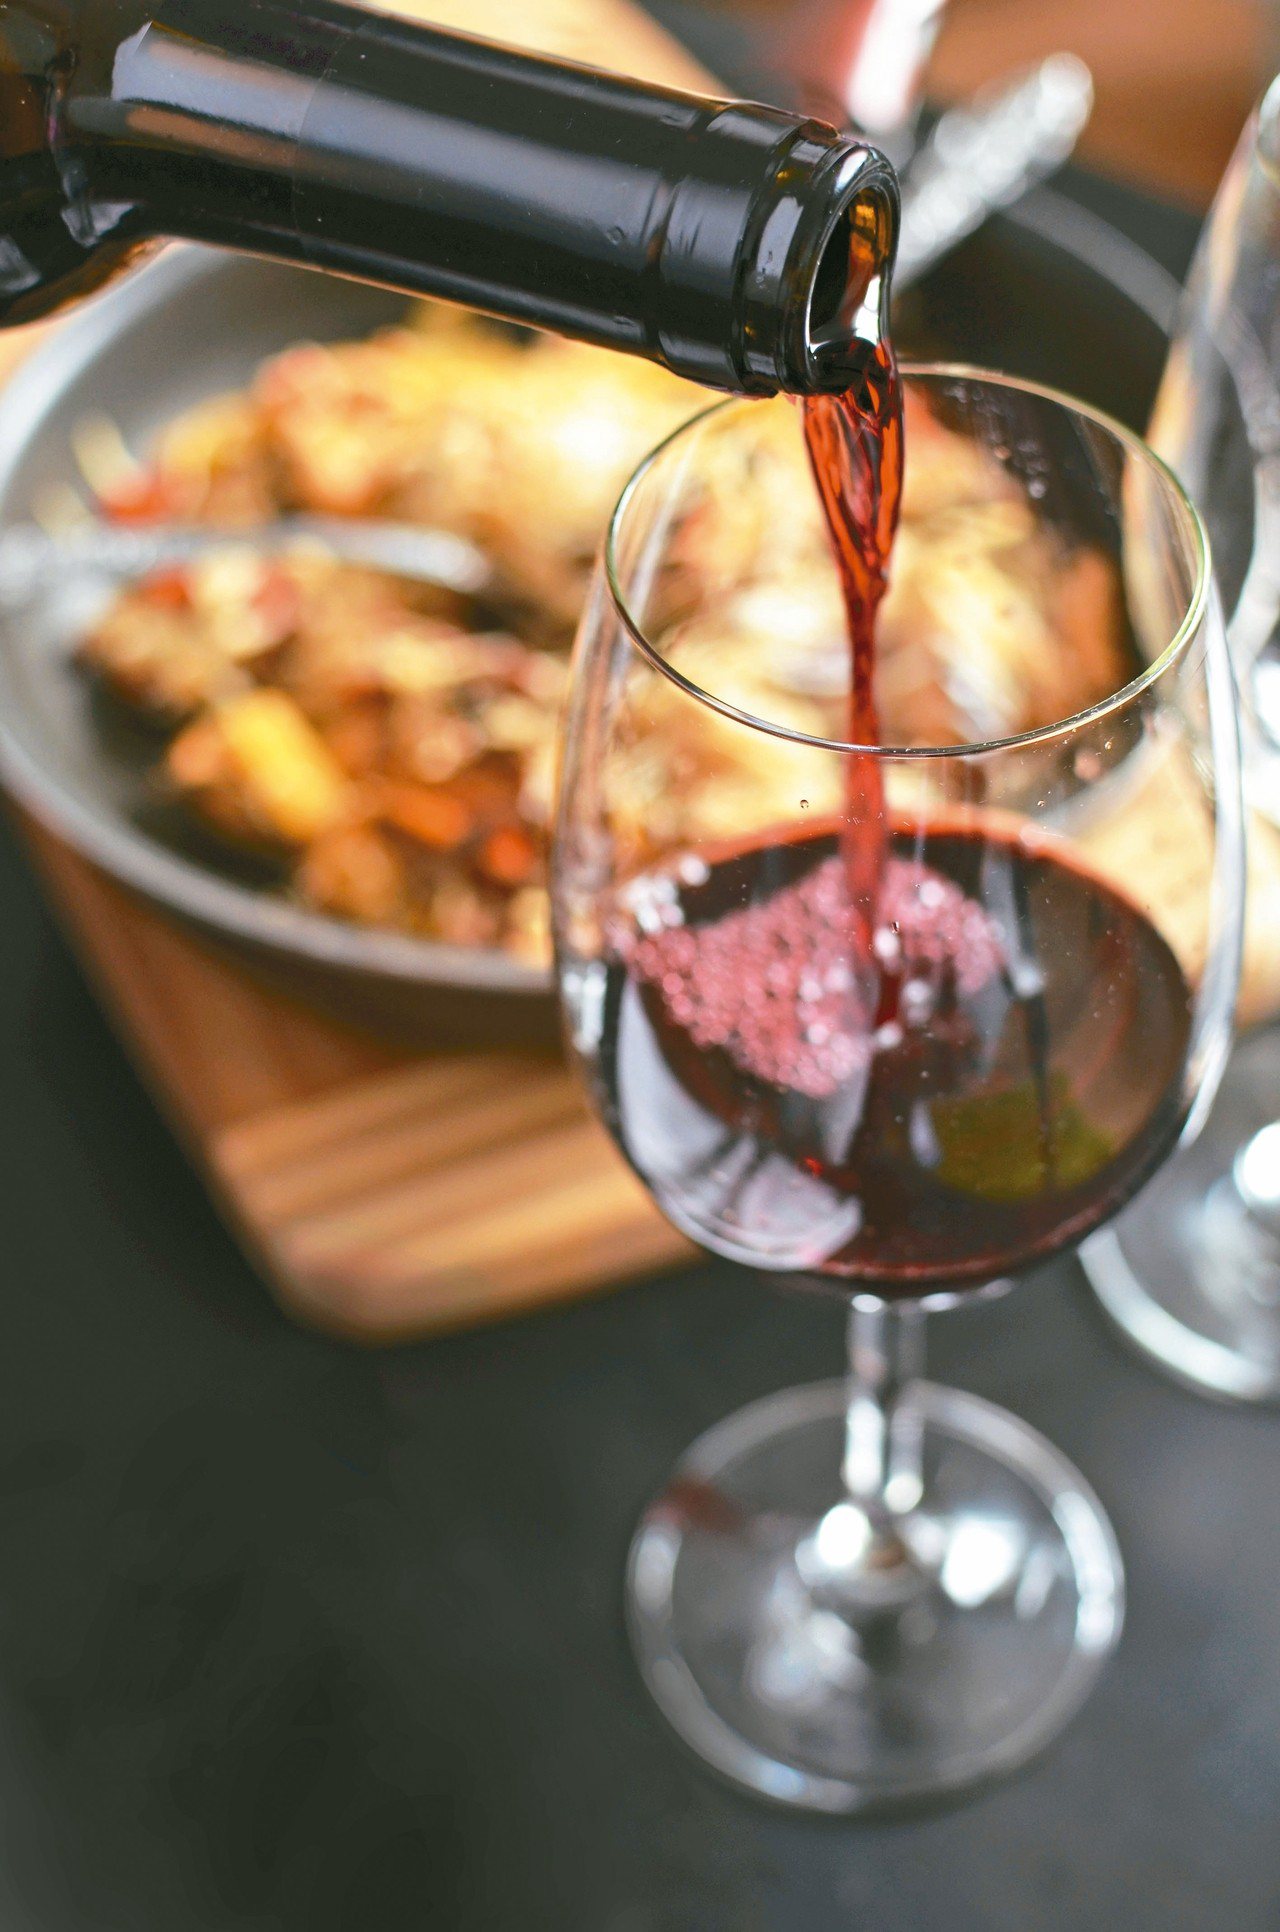 洋蔥紅酒則可在日常飲用。文獻指出，葡萄酒內含抗氧化多酚，加入生洋蔥可幫助預防心血管疾病。